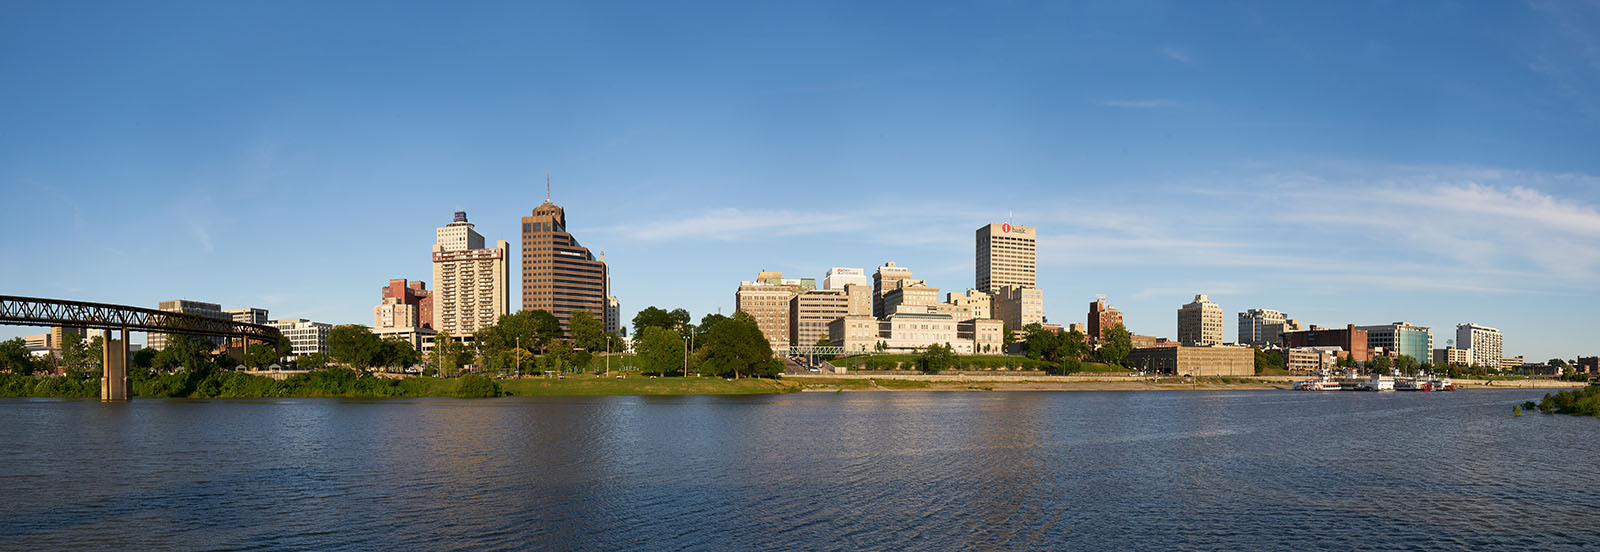 Downtown Memphis buildings landscape